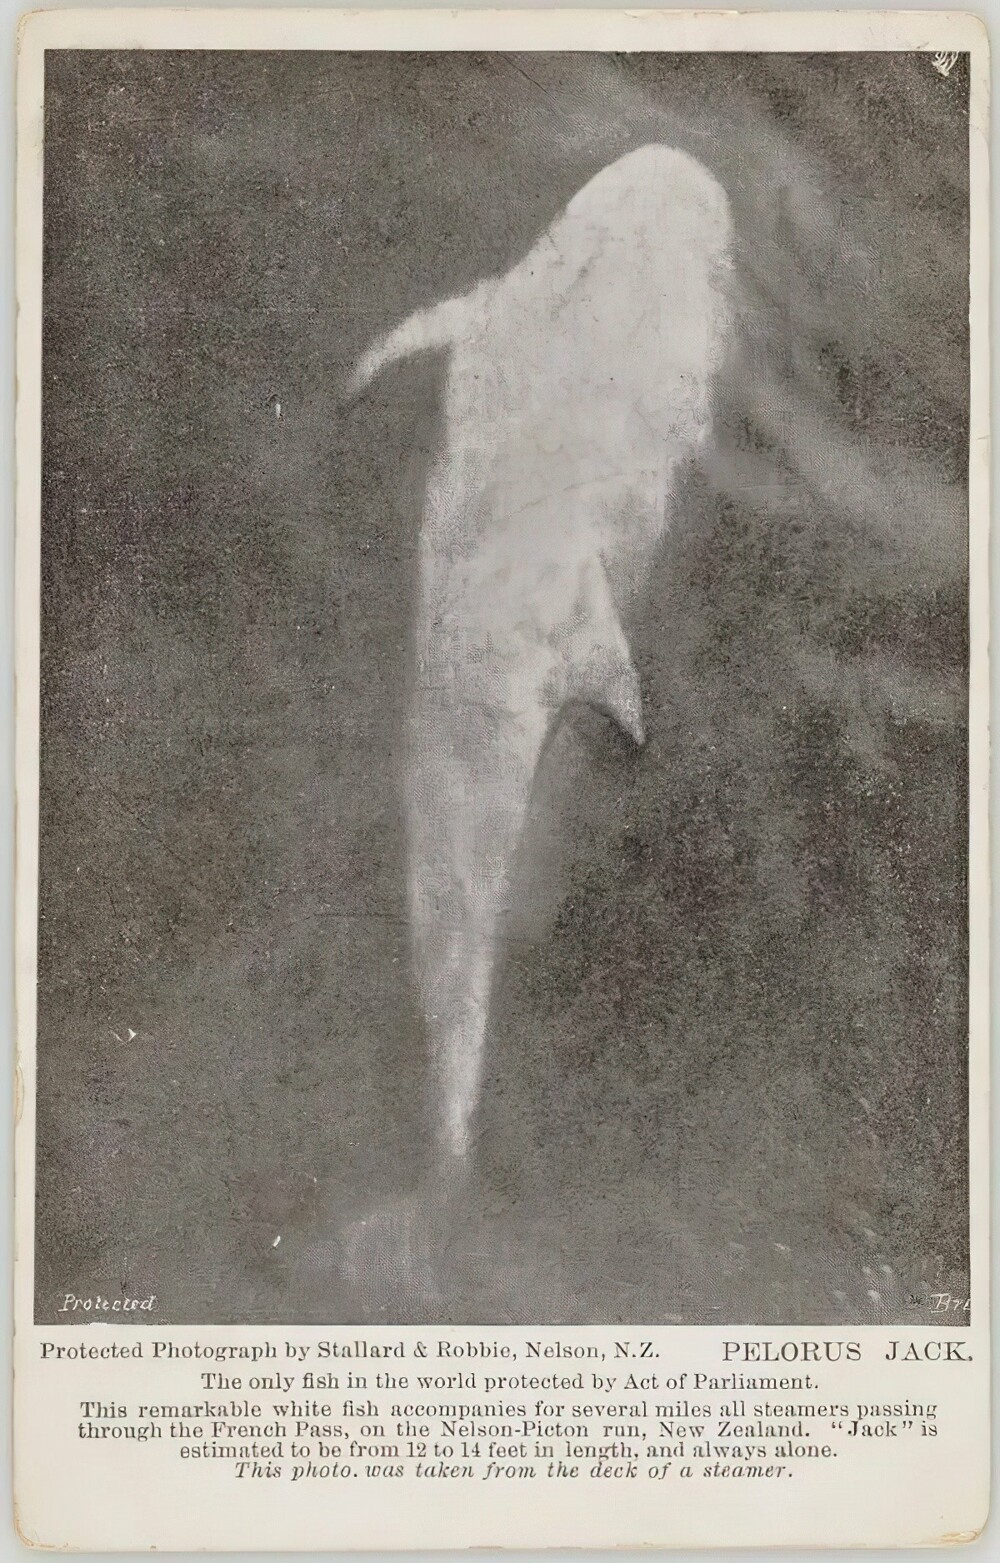 26. Это Пелорус Джек, серый дельфин, который два десятилетия помогал проводить корабли через коварный Французский перевал в Новой Зеландии